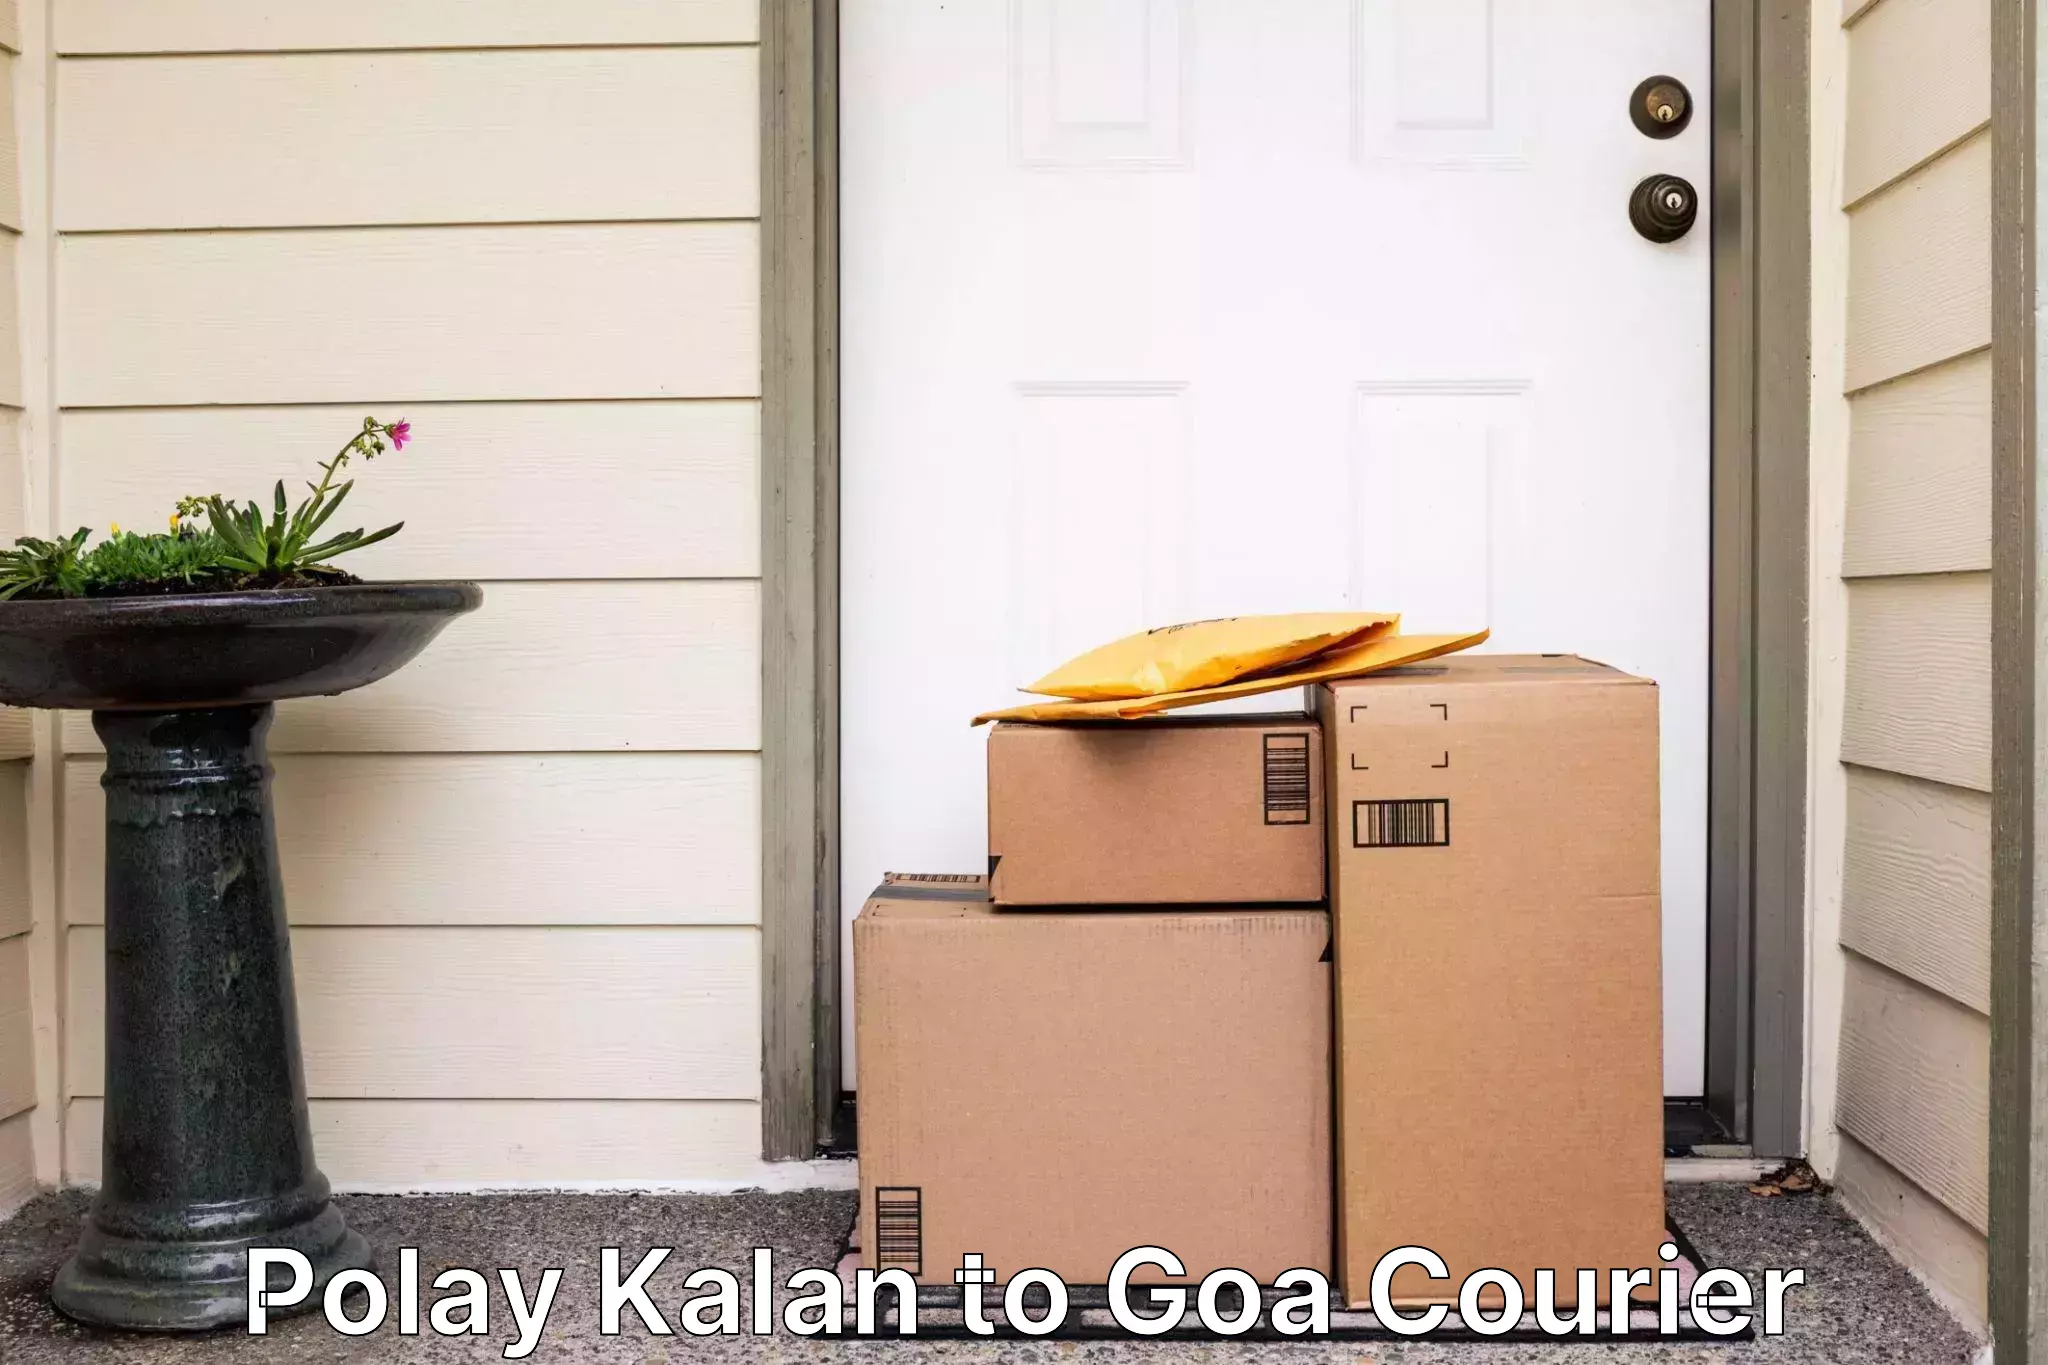 Reliable courier services Polay Kalan to Goa